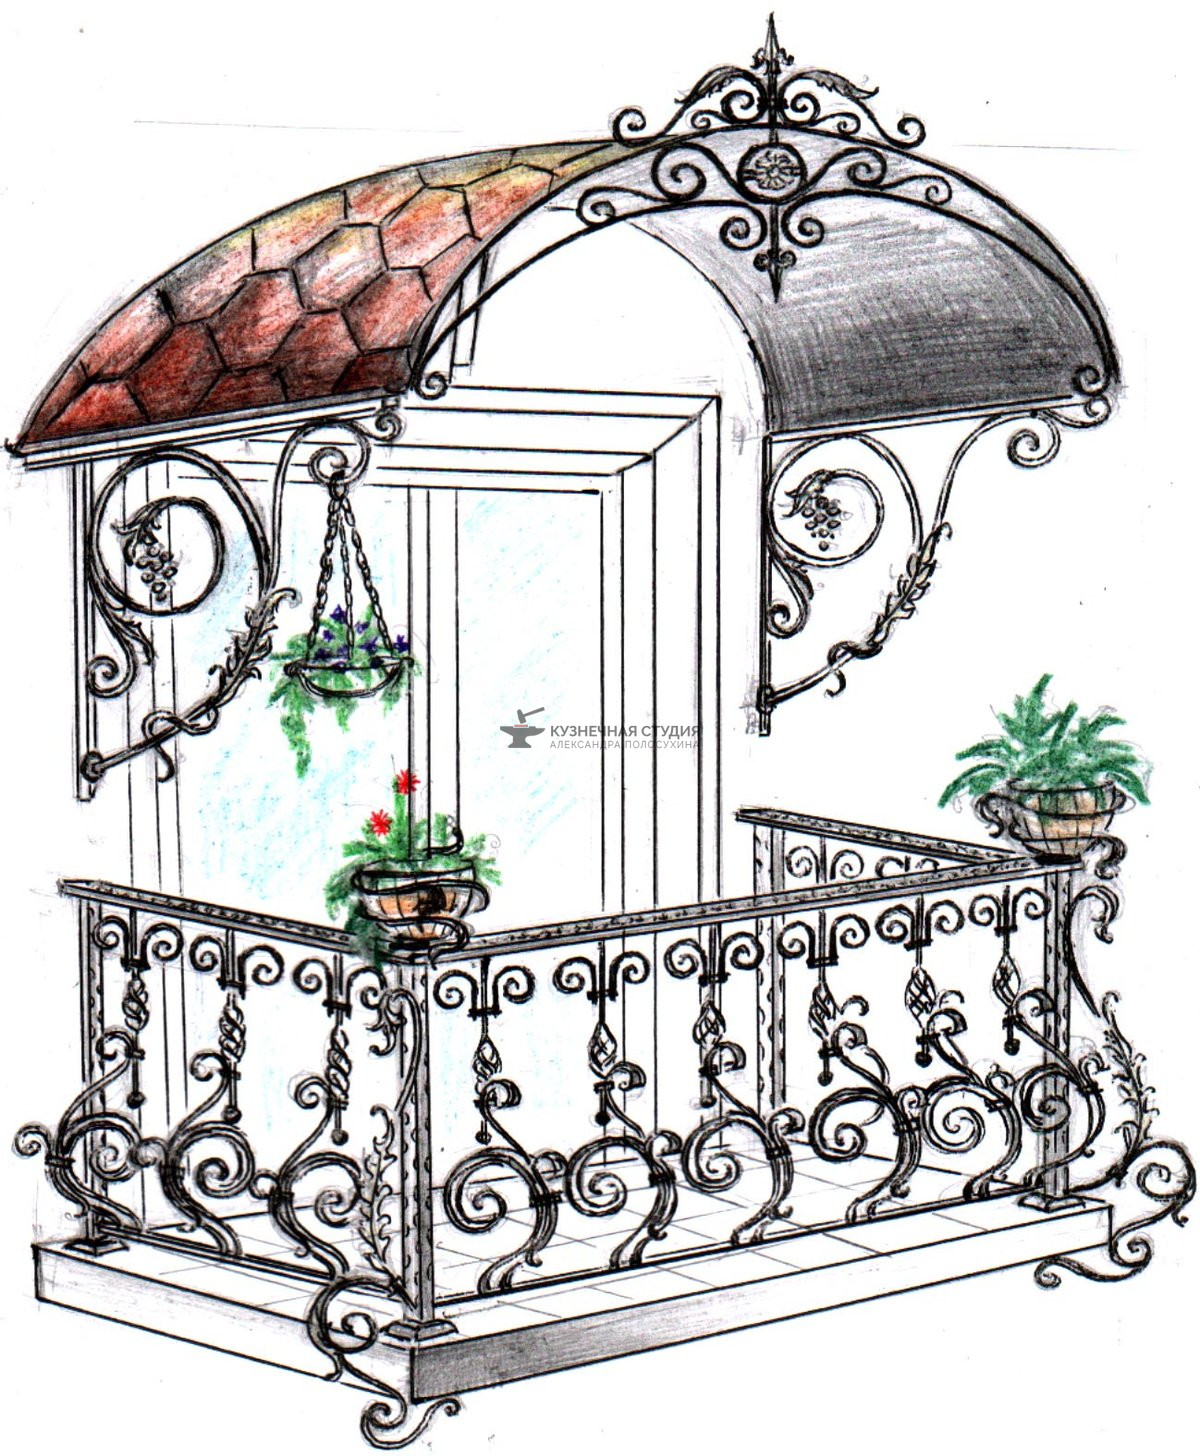 Кованый балкон №1